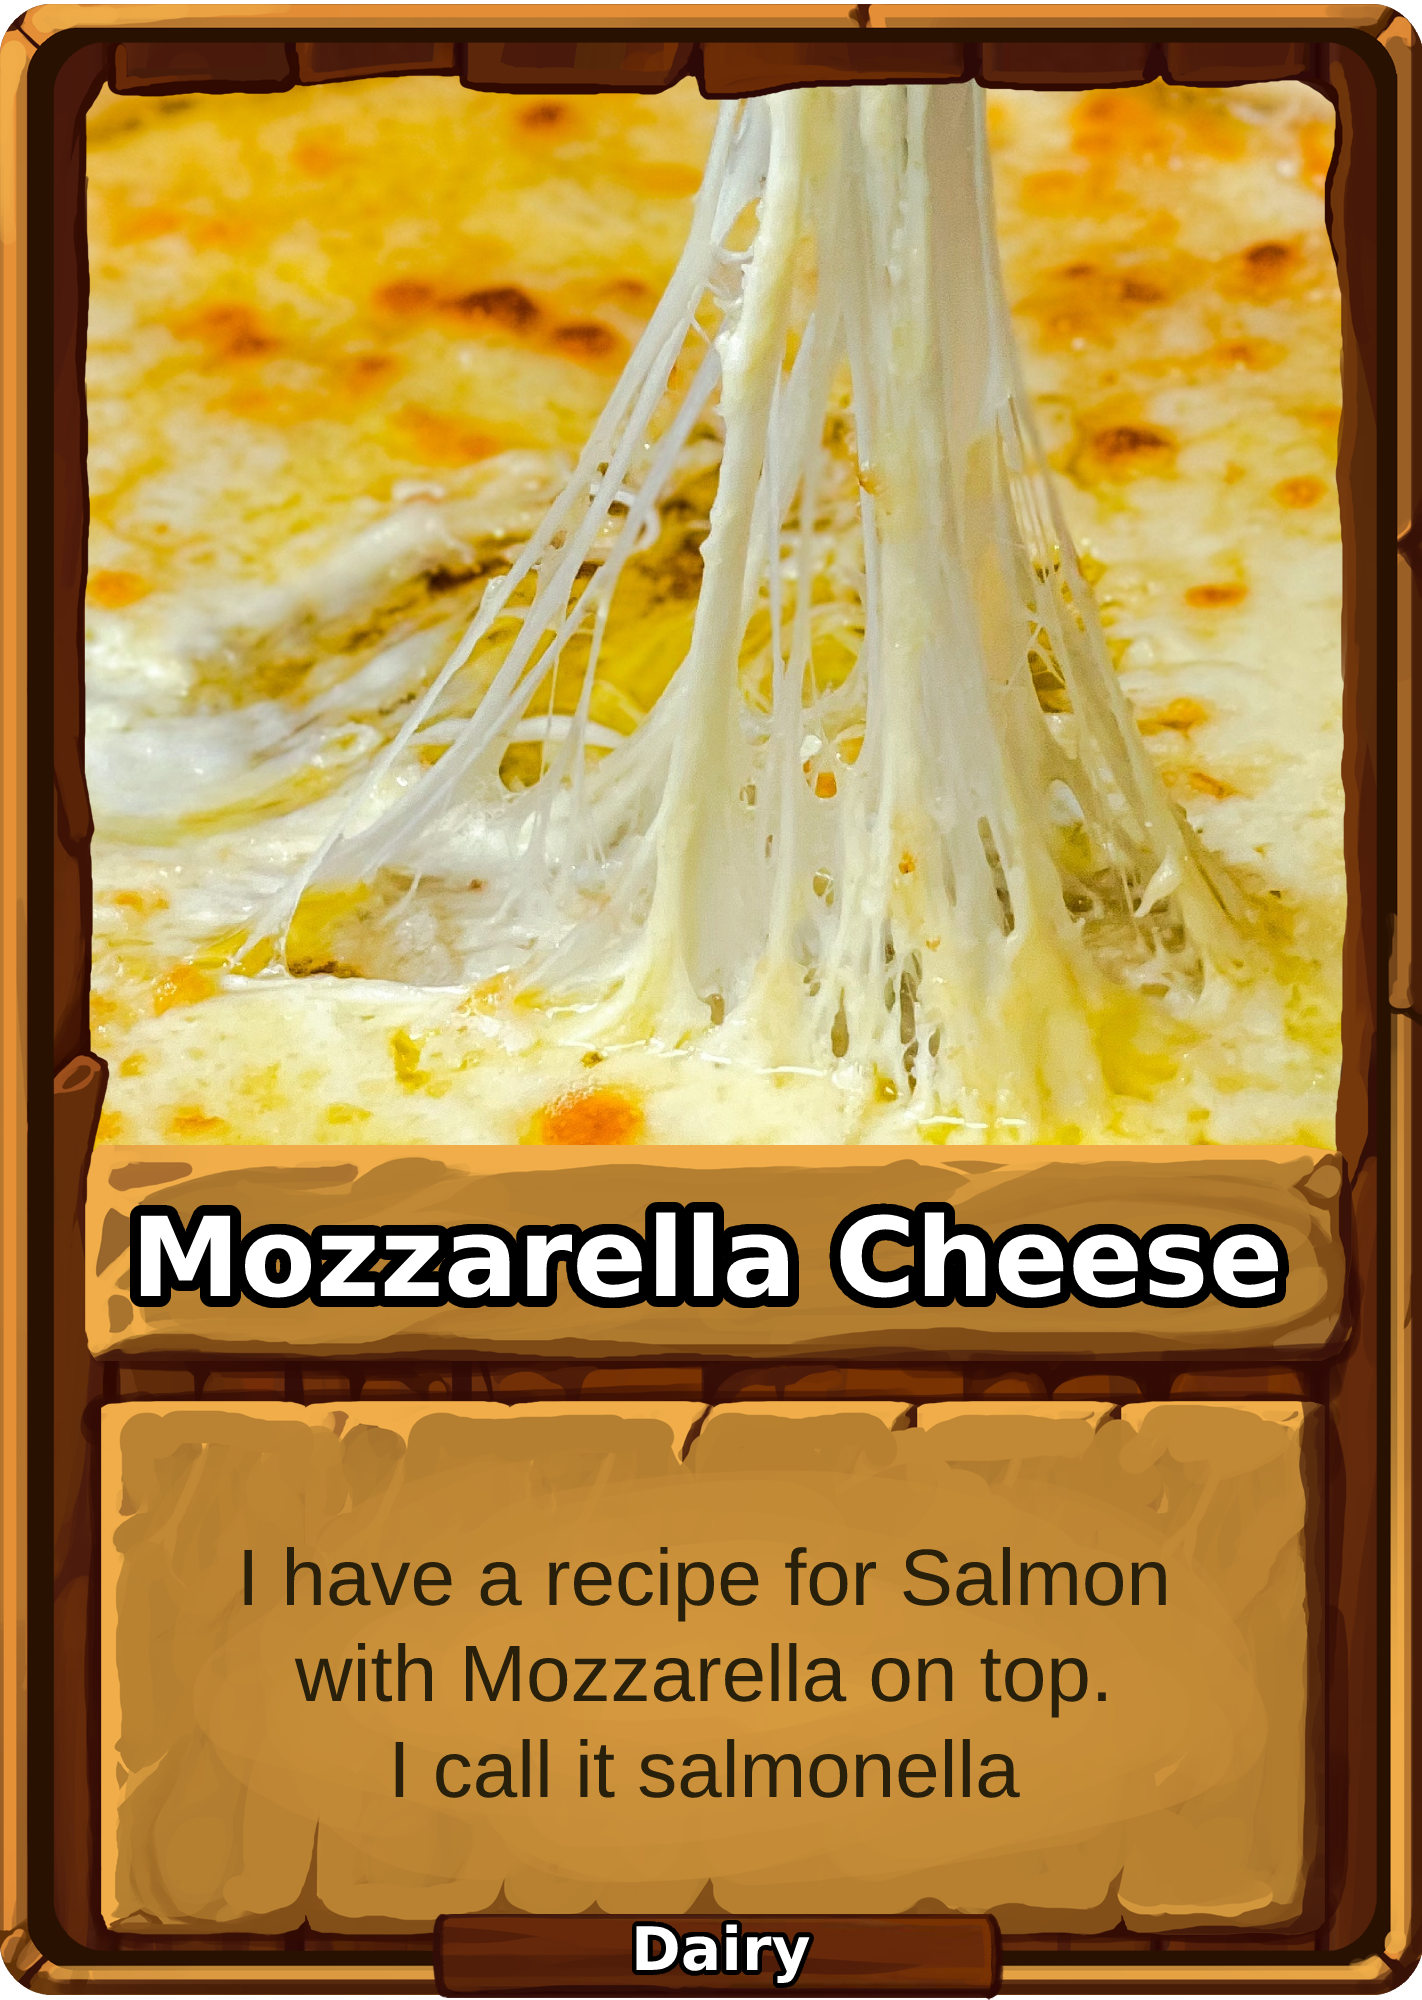 Mozzarella Cheese Card Image